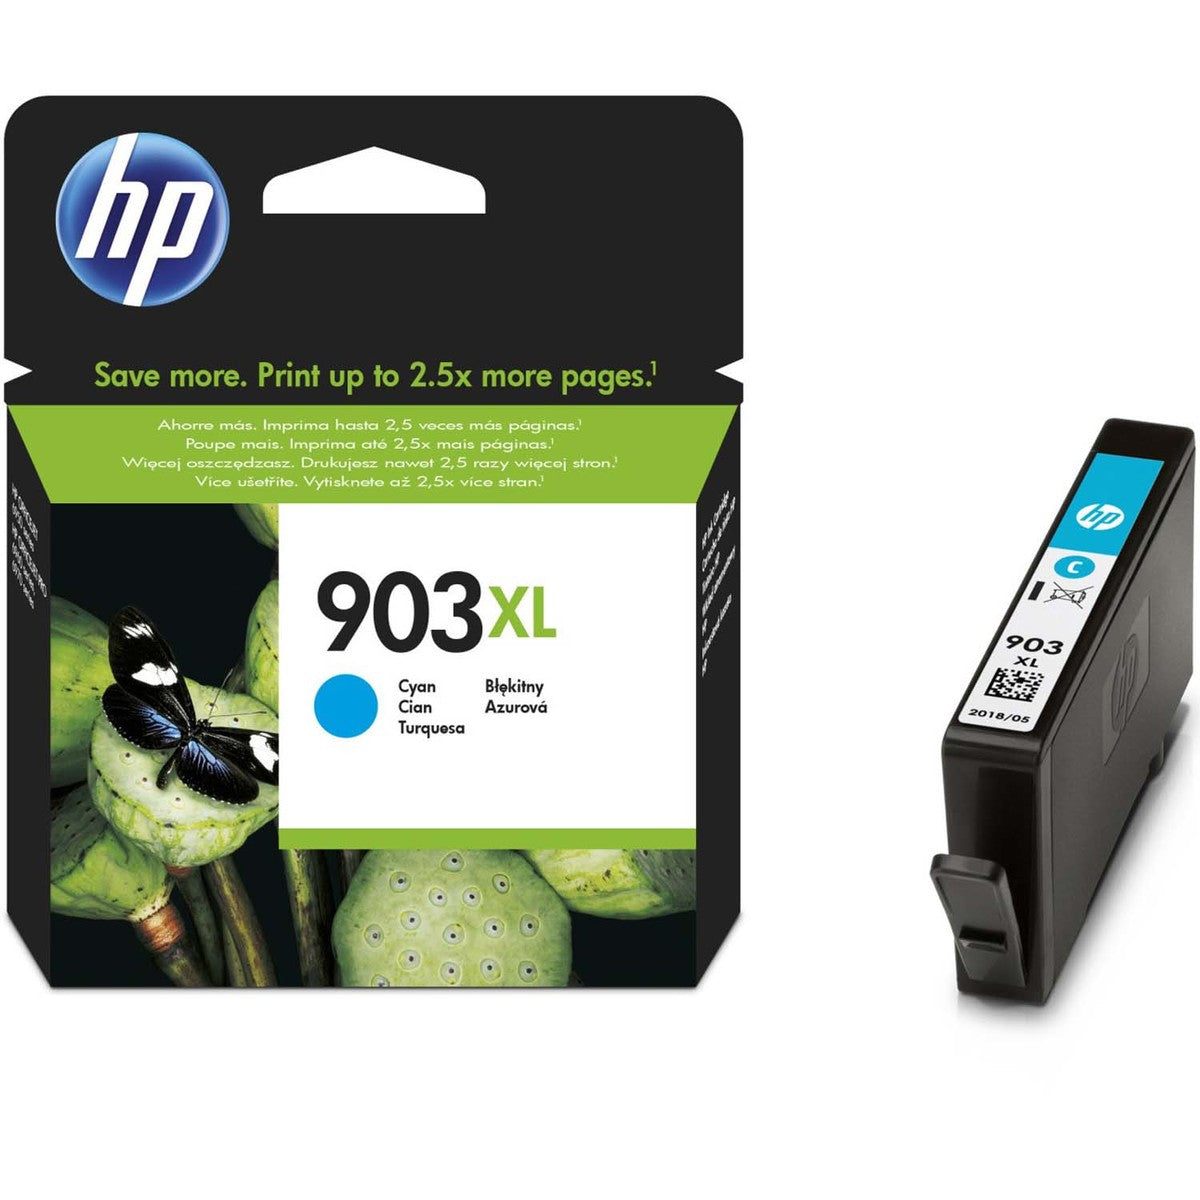 HP 903XL    Ink Cartridge for HP Officejet Pro 6960